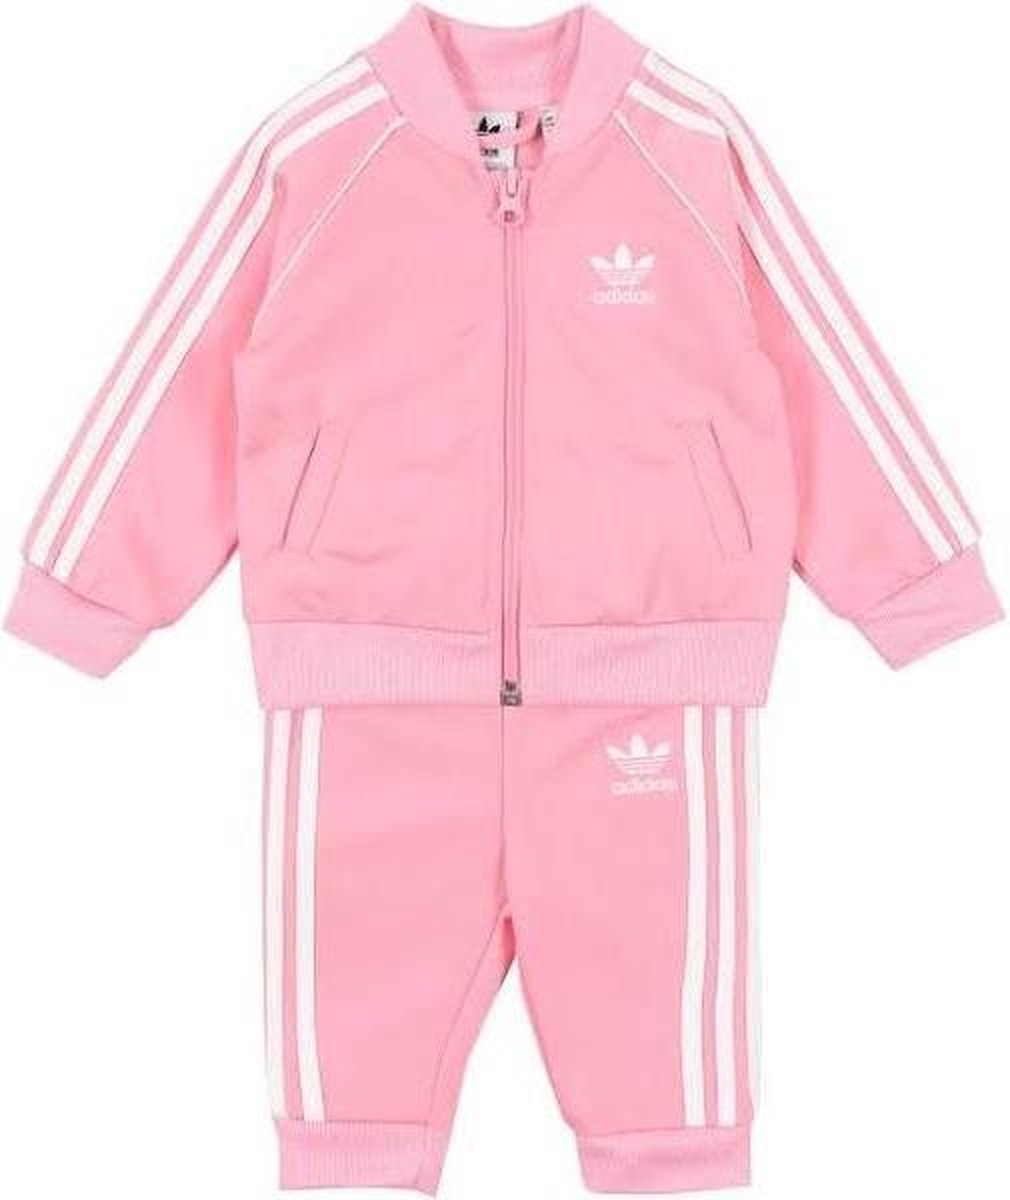 Eerlijk Alexander Graham Bell binding Adidas trainingspak meisjes roze maat 86 | bol.com